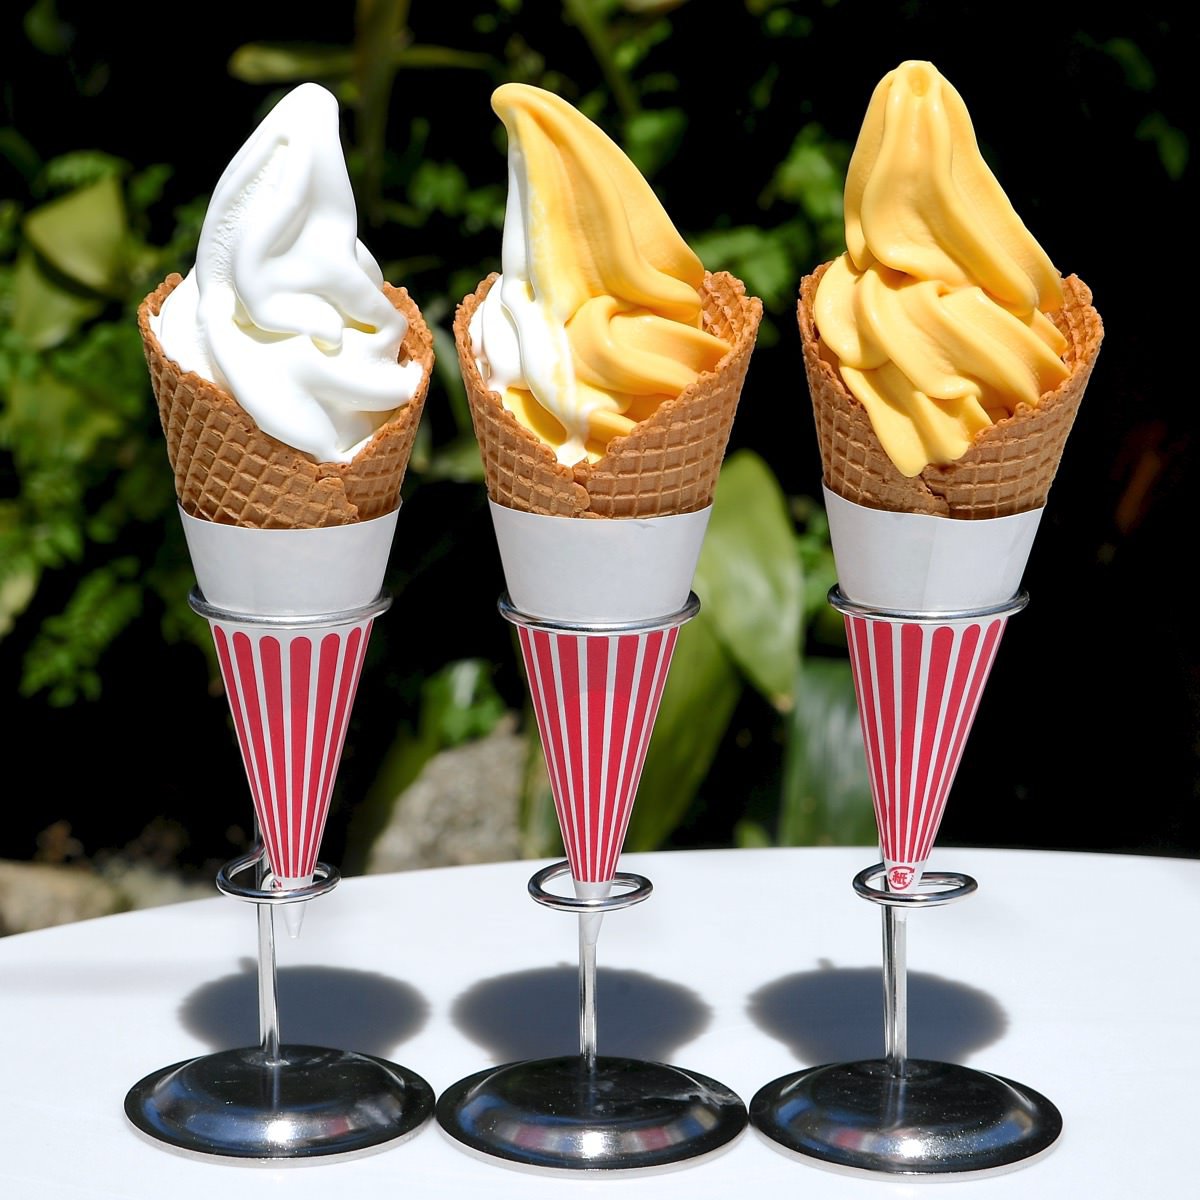 ট ইট র Mezzomikiのディズニーブログ 7月3日はソフトクリームの日 東京ディズニーランドで食べられるソフトクリーム T Co Eqhk0hmuma